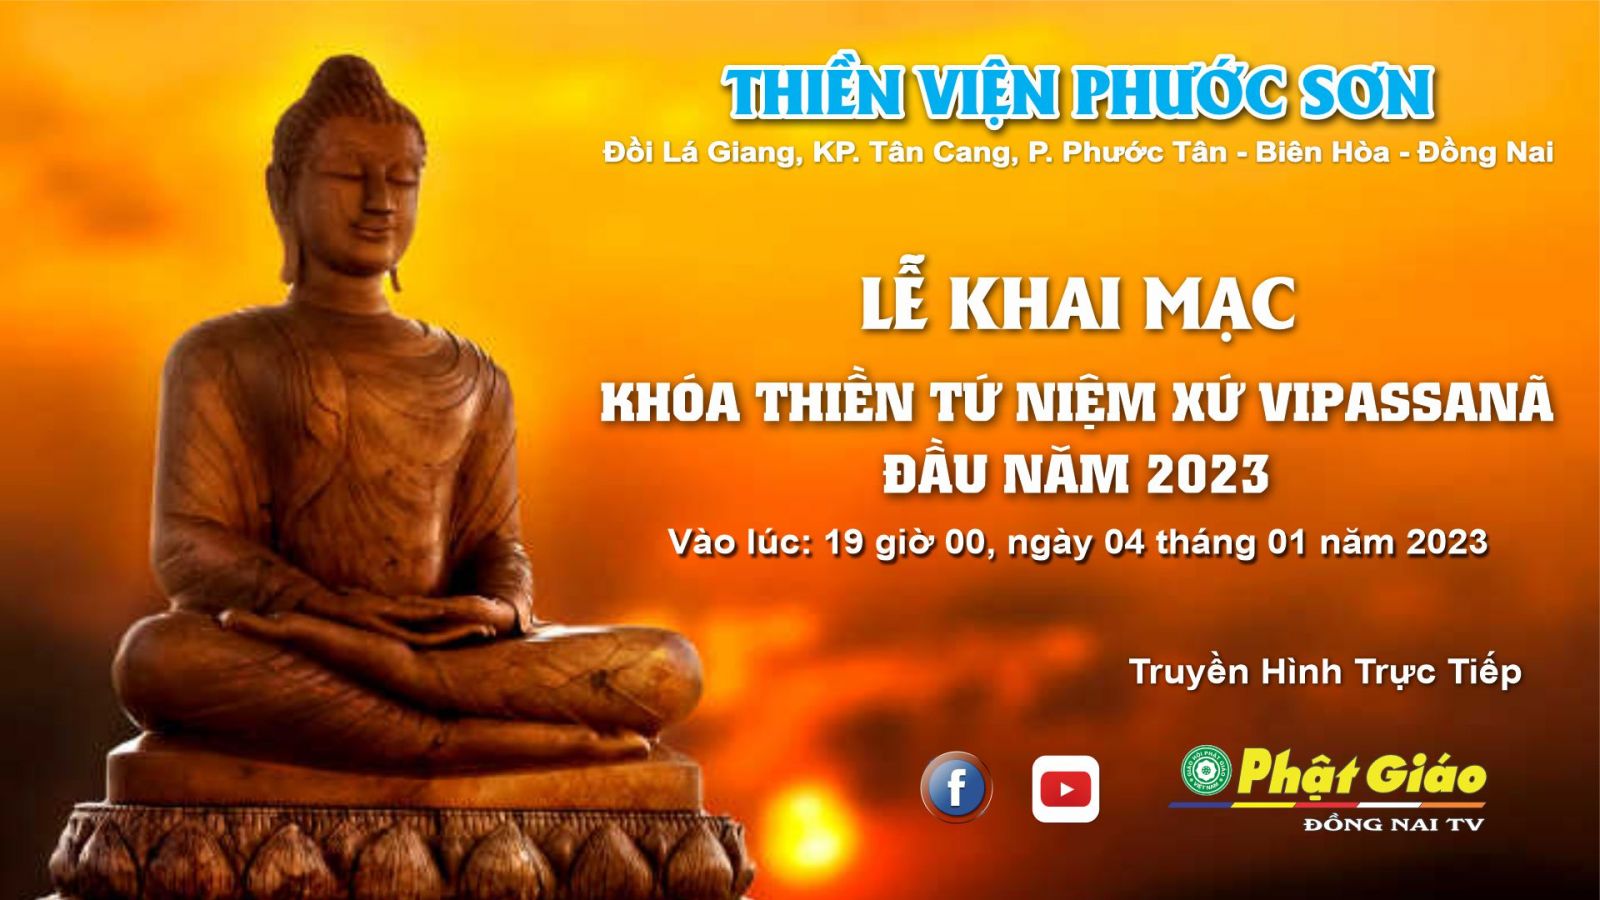 Trực tiếp: Lễ Khai Mạc - Khóa Thiền Tứ Niệm Xứ Vipassanã 2023 - tại Thiền viện Phước Sơn - Biên Hòa